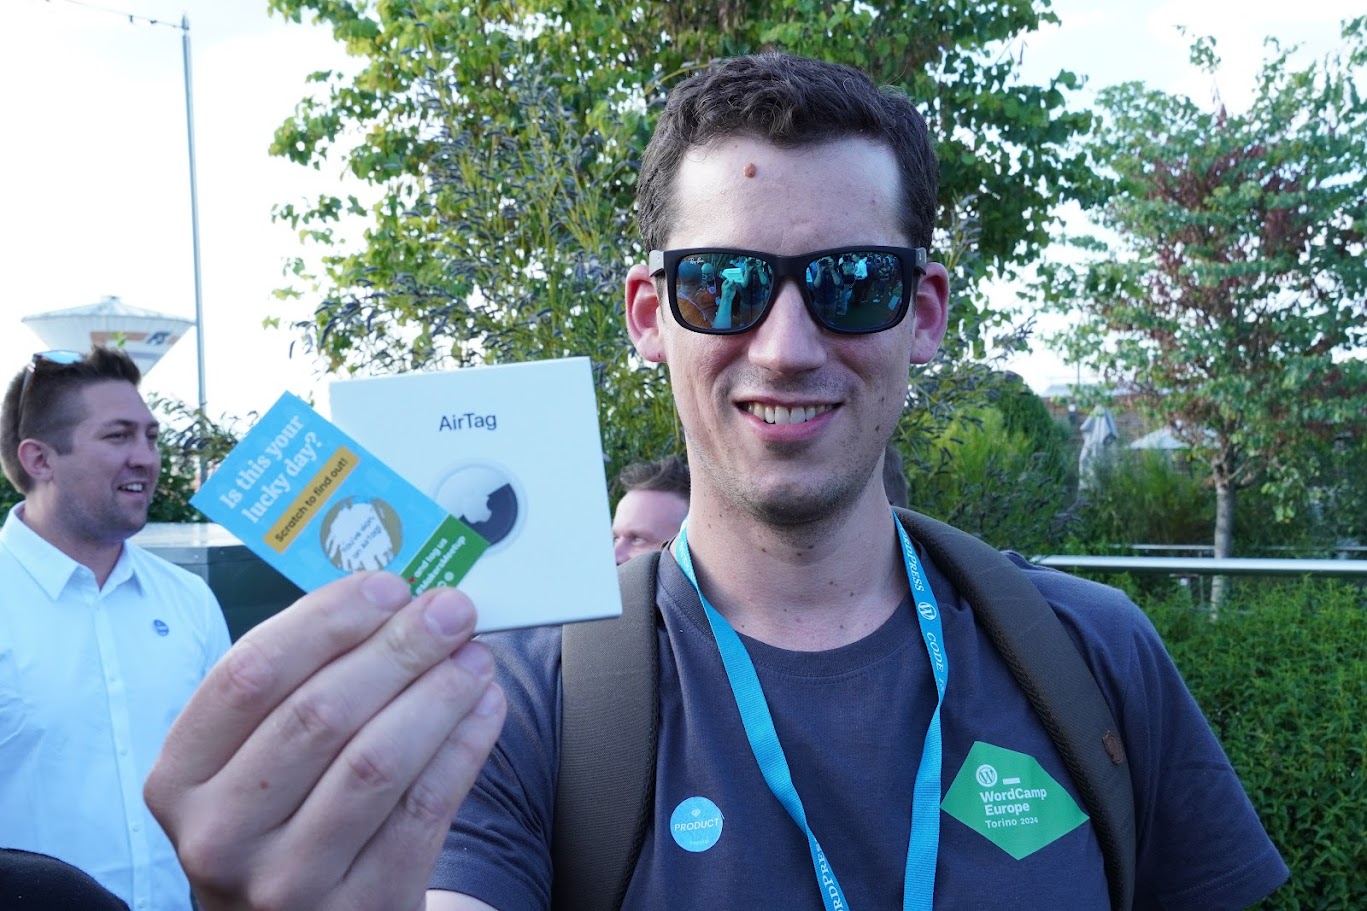 Xaver Birsak with a winning scratch card at Makers' Meetup